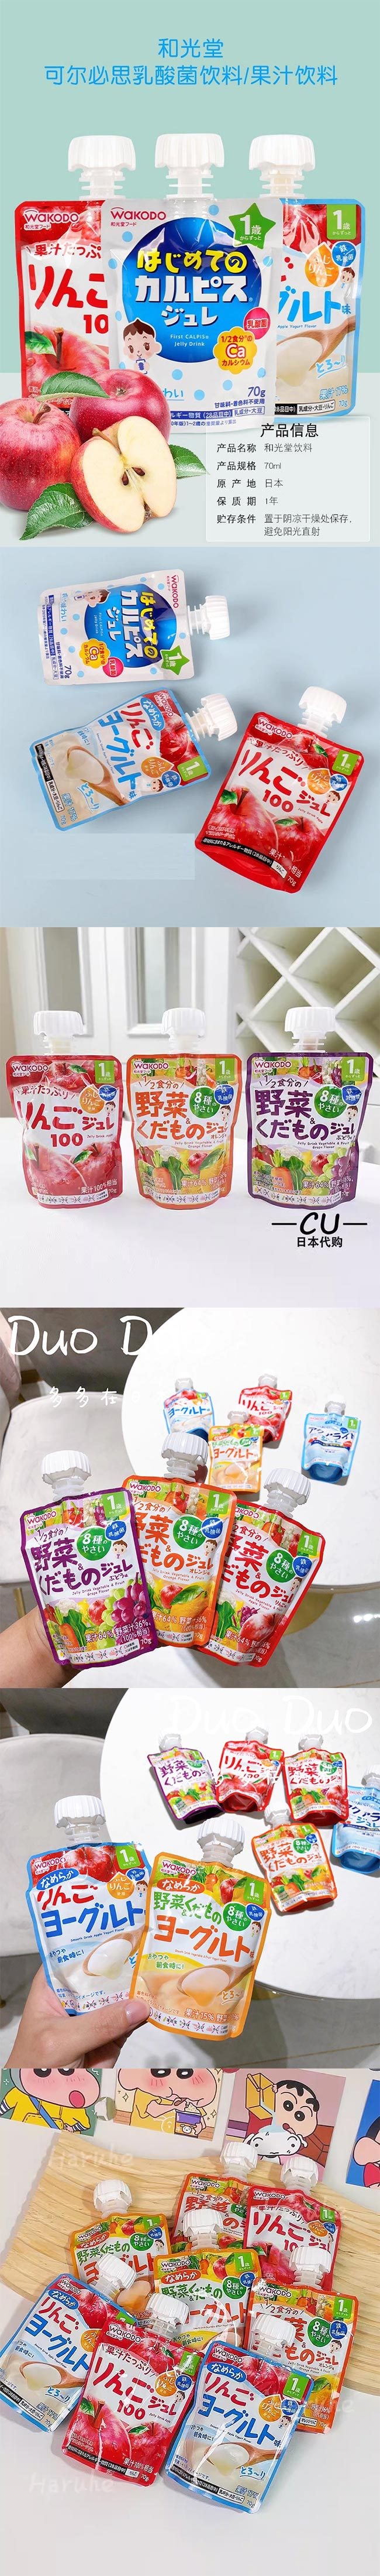 【日本直邮】WAKODO和光堂  1岁+宝宝水果蔬菜汁 果冻果汁吸吸乐 葡萄味 70g